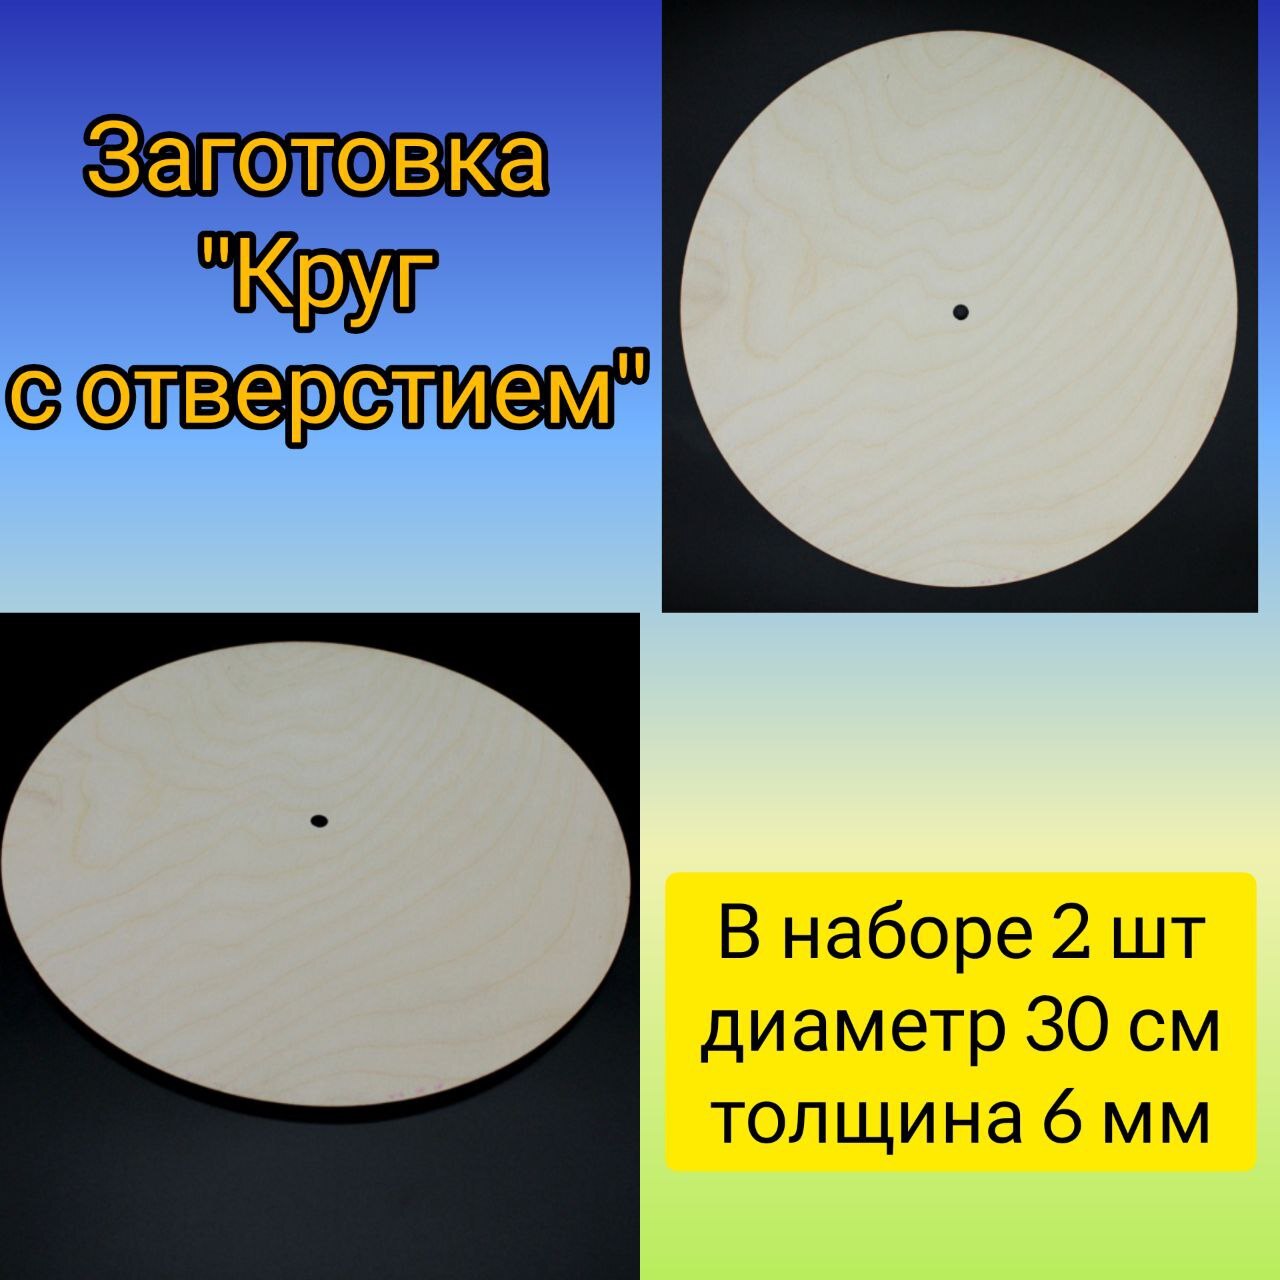 Заготовки для творчества рукоделия Деревянный Круг артборд 12 см (5 штук)